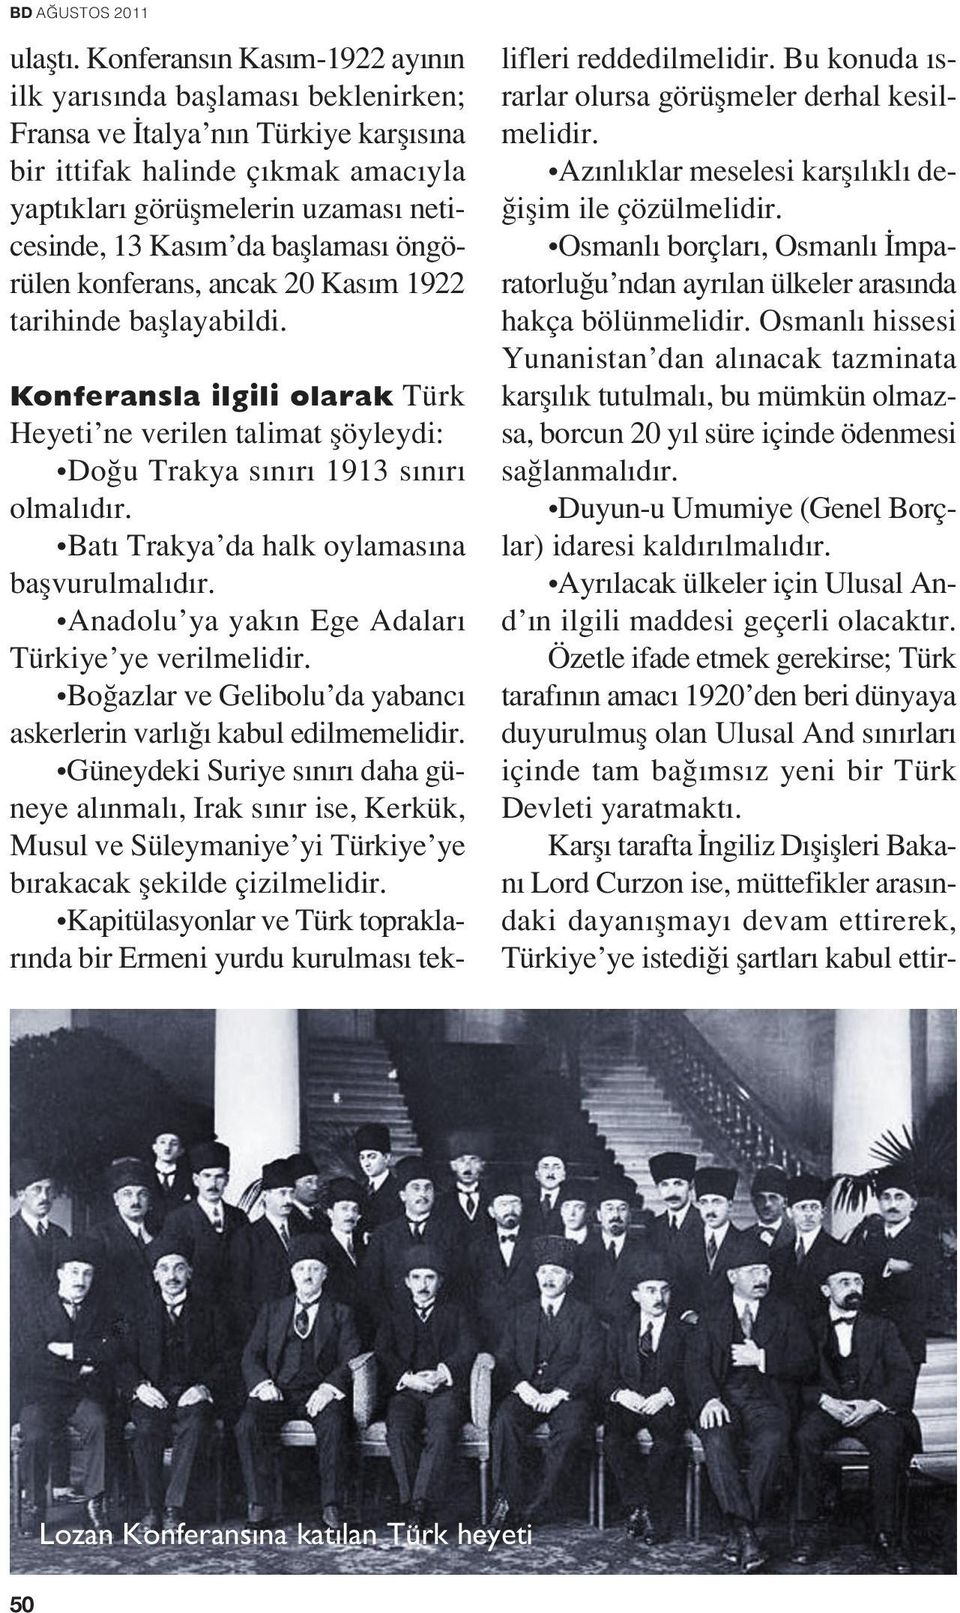 bafllamas öngörülen konferans, ancak 20 Kas m 1922 tarihinde bafllayabildi. Konferansla ilgili olarak Türk Heyeti ne verilen talimat flöyleydi: Do u Trakya s n r 1913 s n r olmal d r.